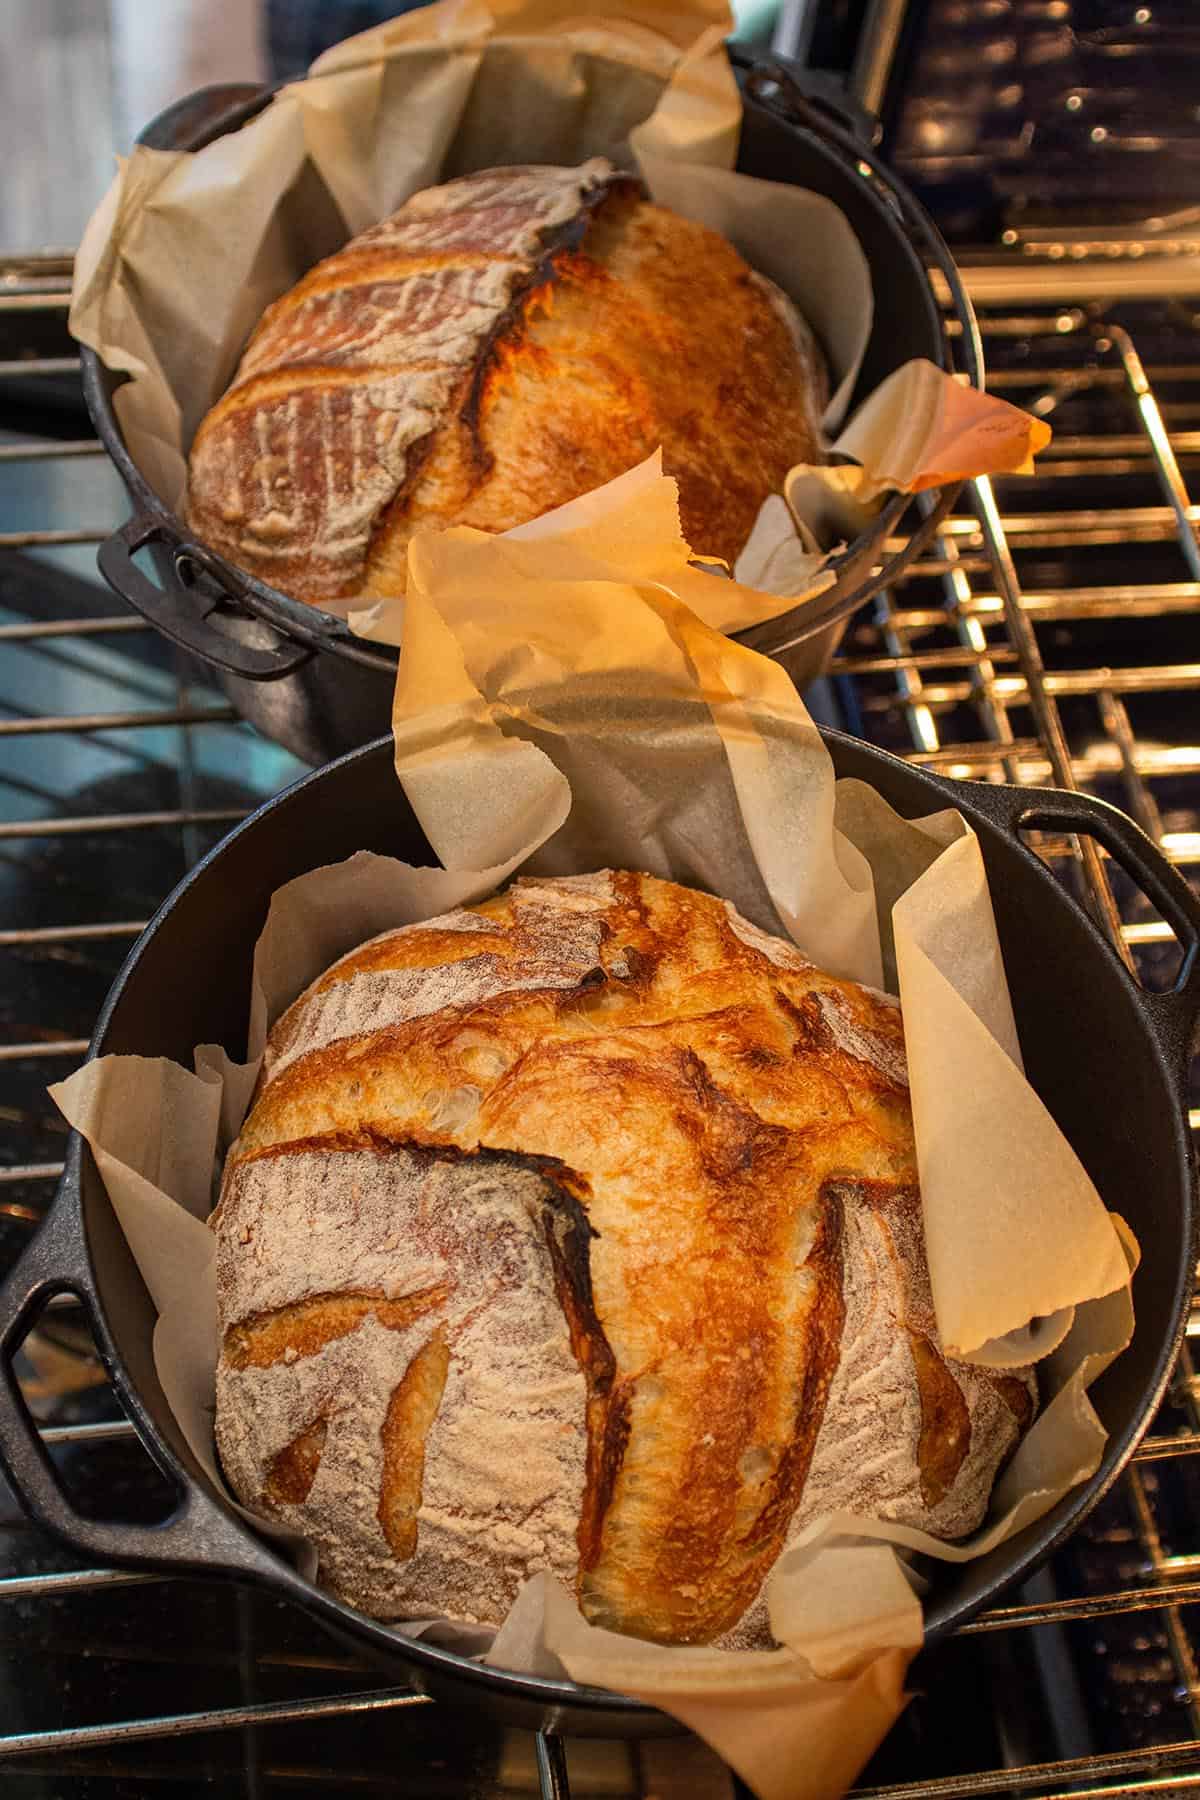 https://dirtanddough.com/wp-content/uploads/2022/03/Best_Dutch_Oven_For_Bread_3.jpg